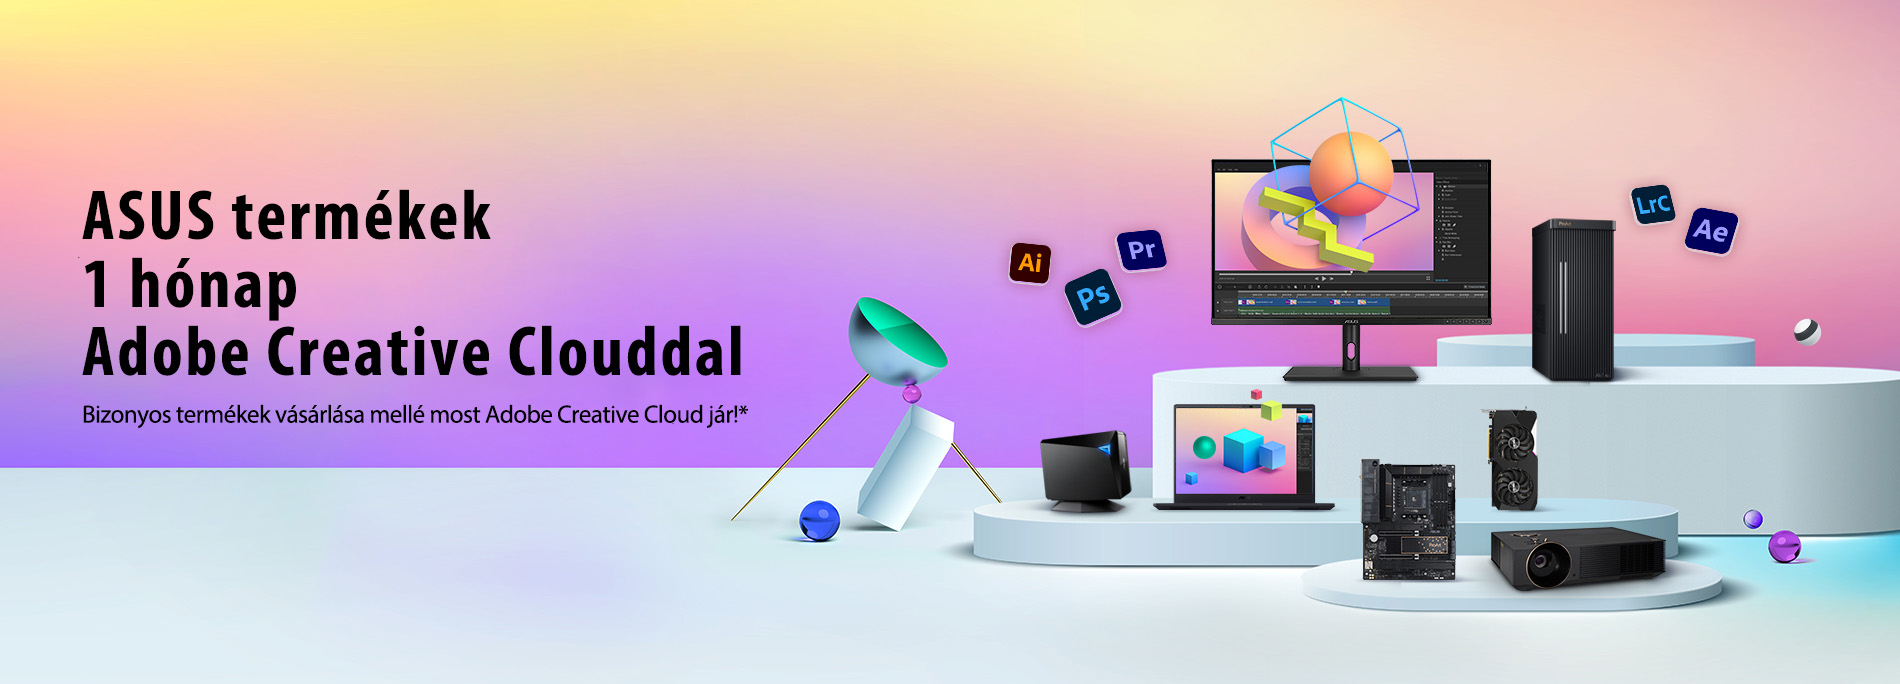 ASUS termékek 1 hónap Adobe Creative Clouddal